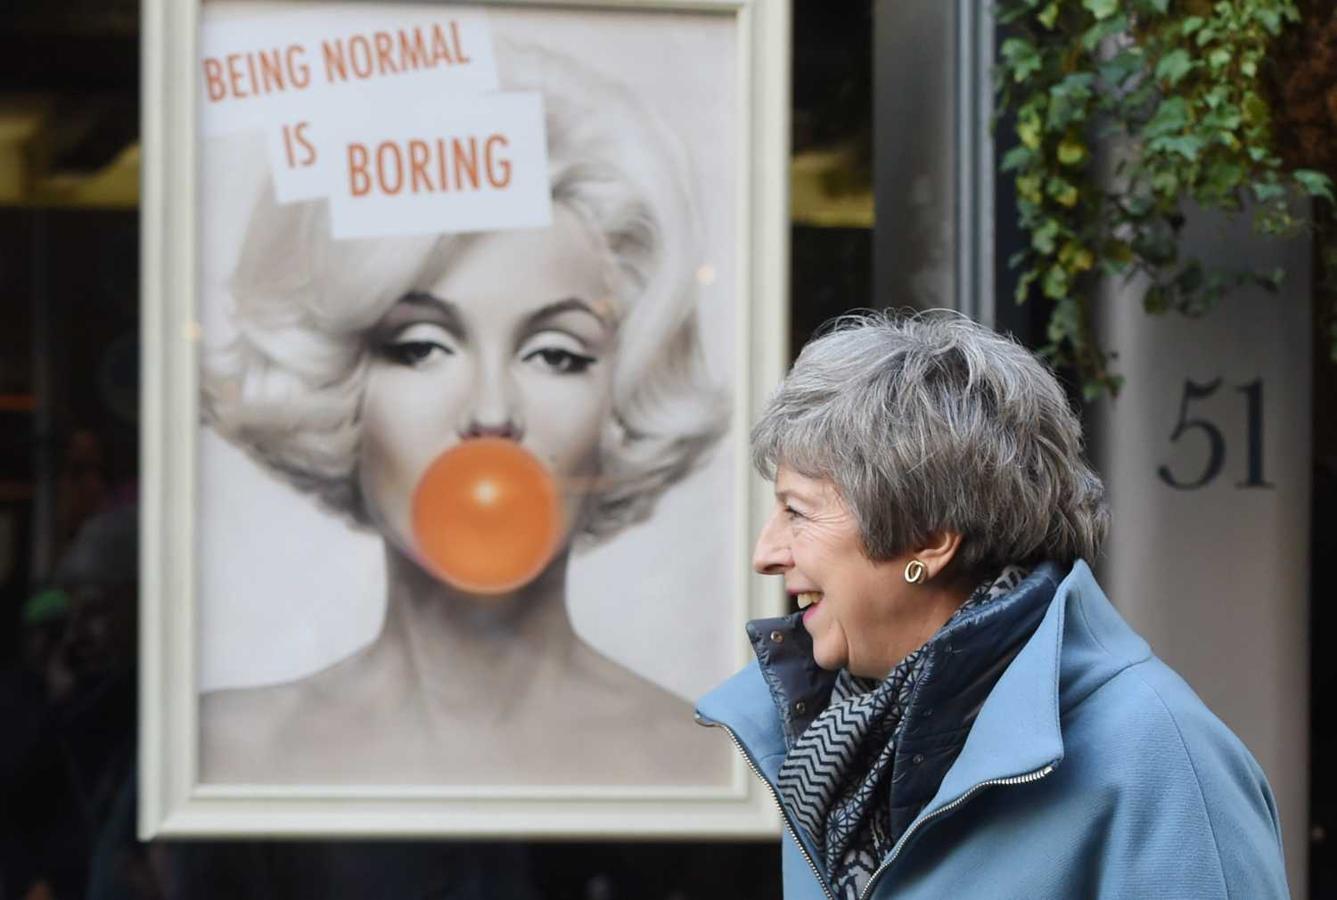 La primera ministra británica, Theresa May (c), sonríe tras visitar una peluquería durante su visita a Salisbury (Reino Unido). Al fondo un cartel publicitario con la cara de Marilyn Monroe y el lema “Ser normal es aburrido “